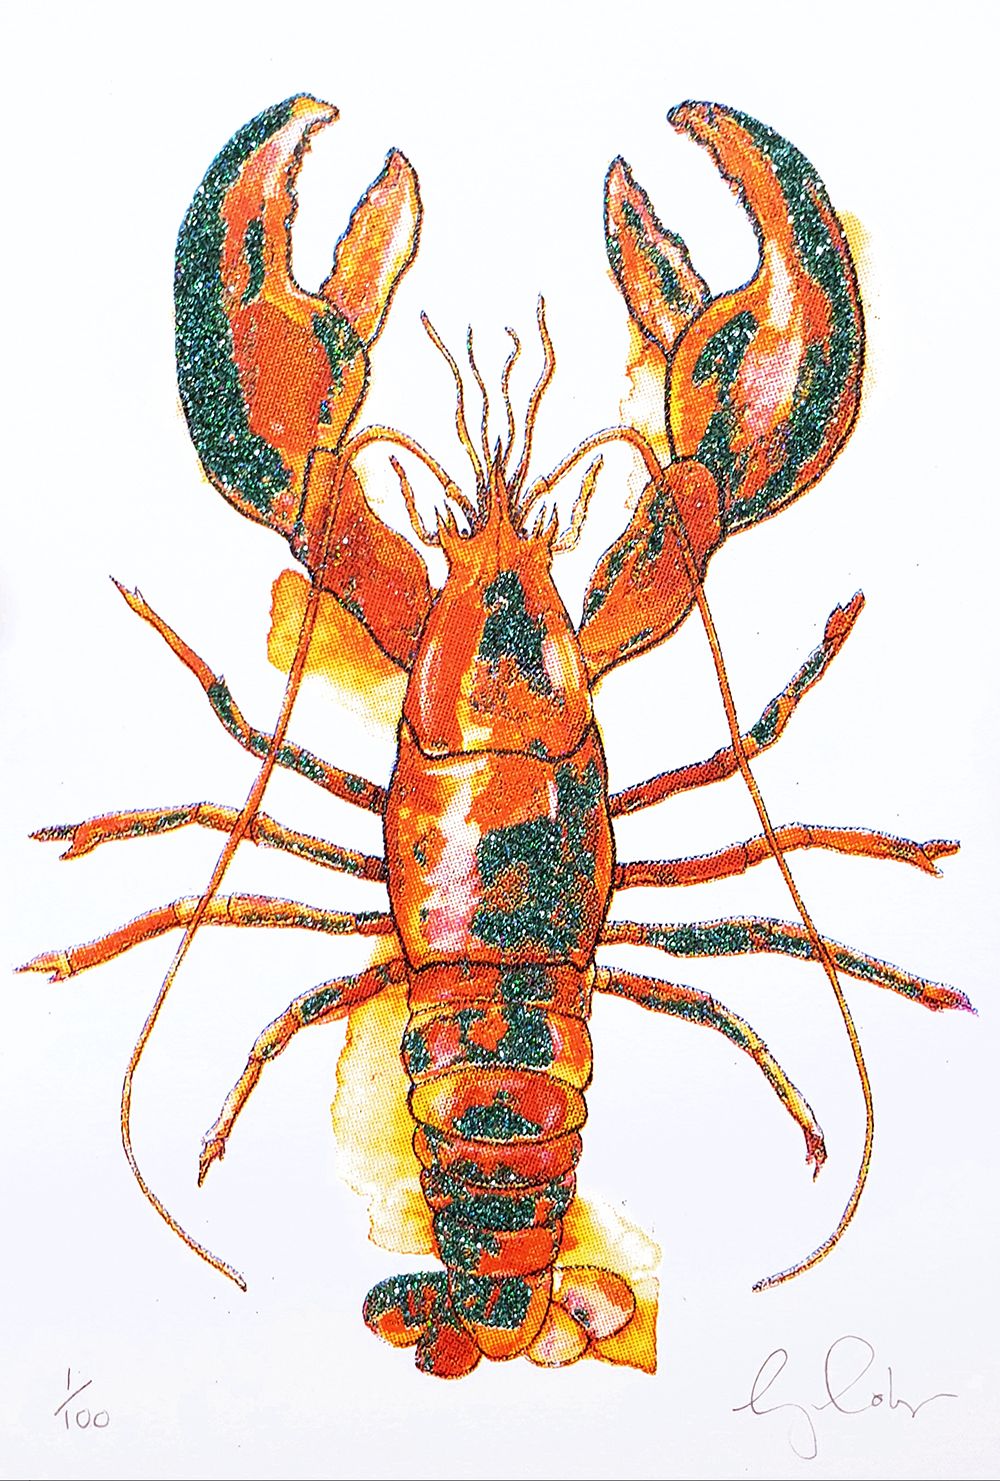 Mini lobster by Gavin Dobson